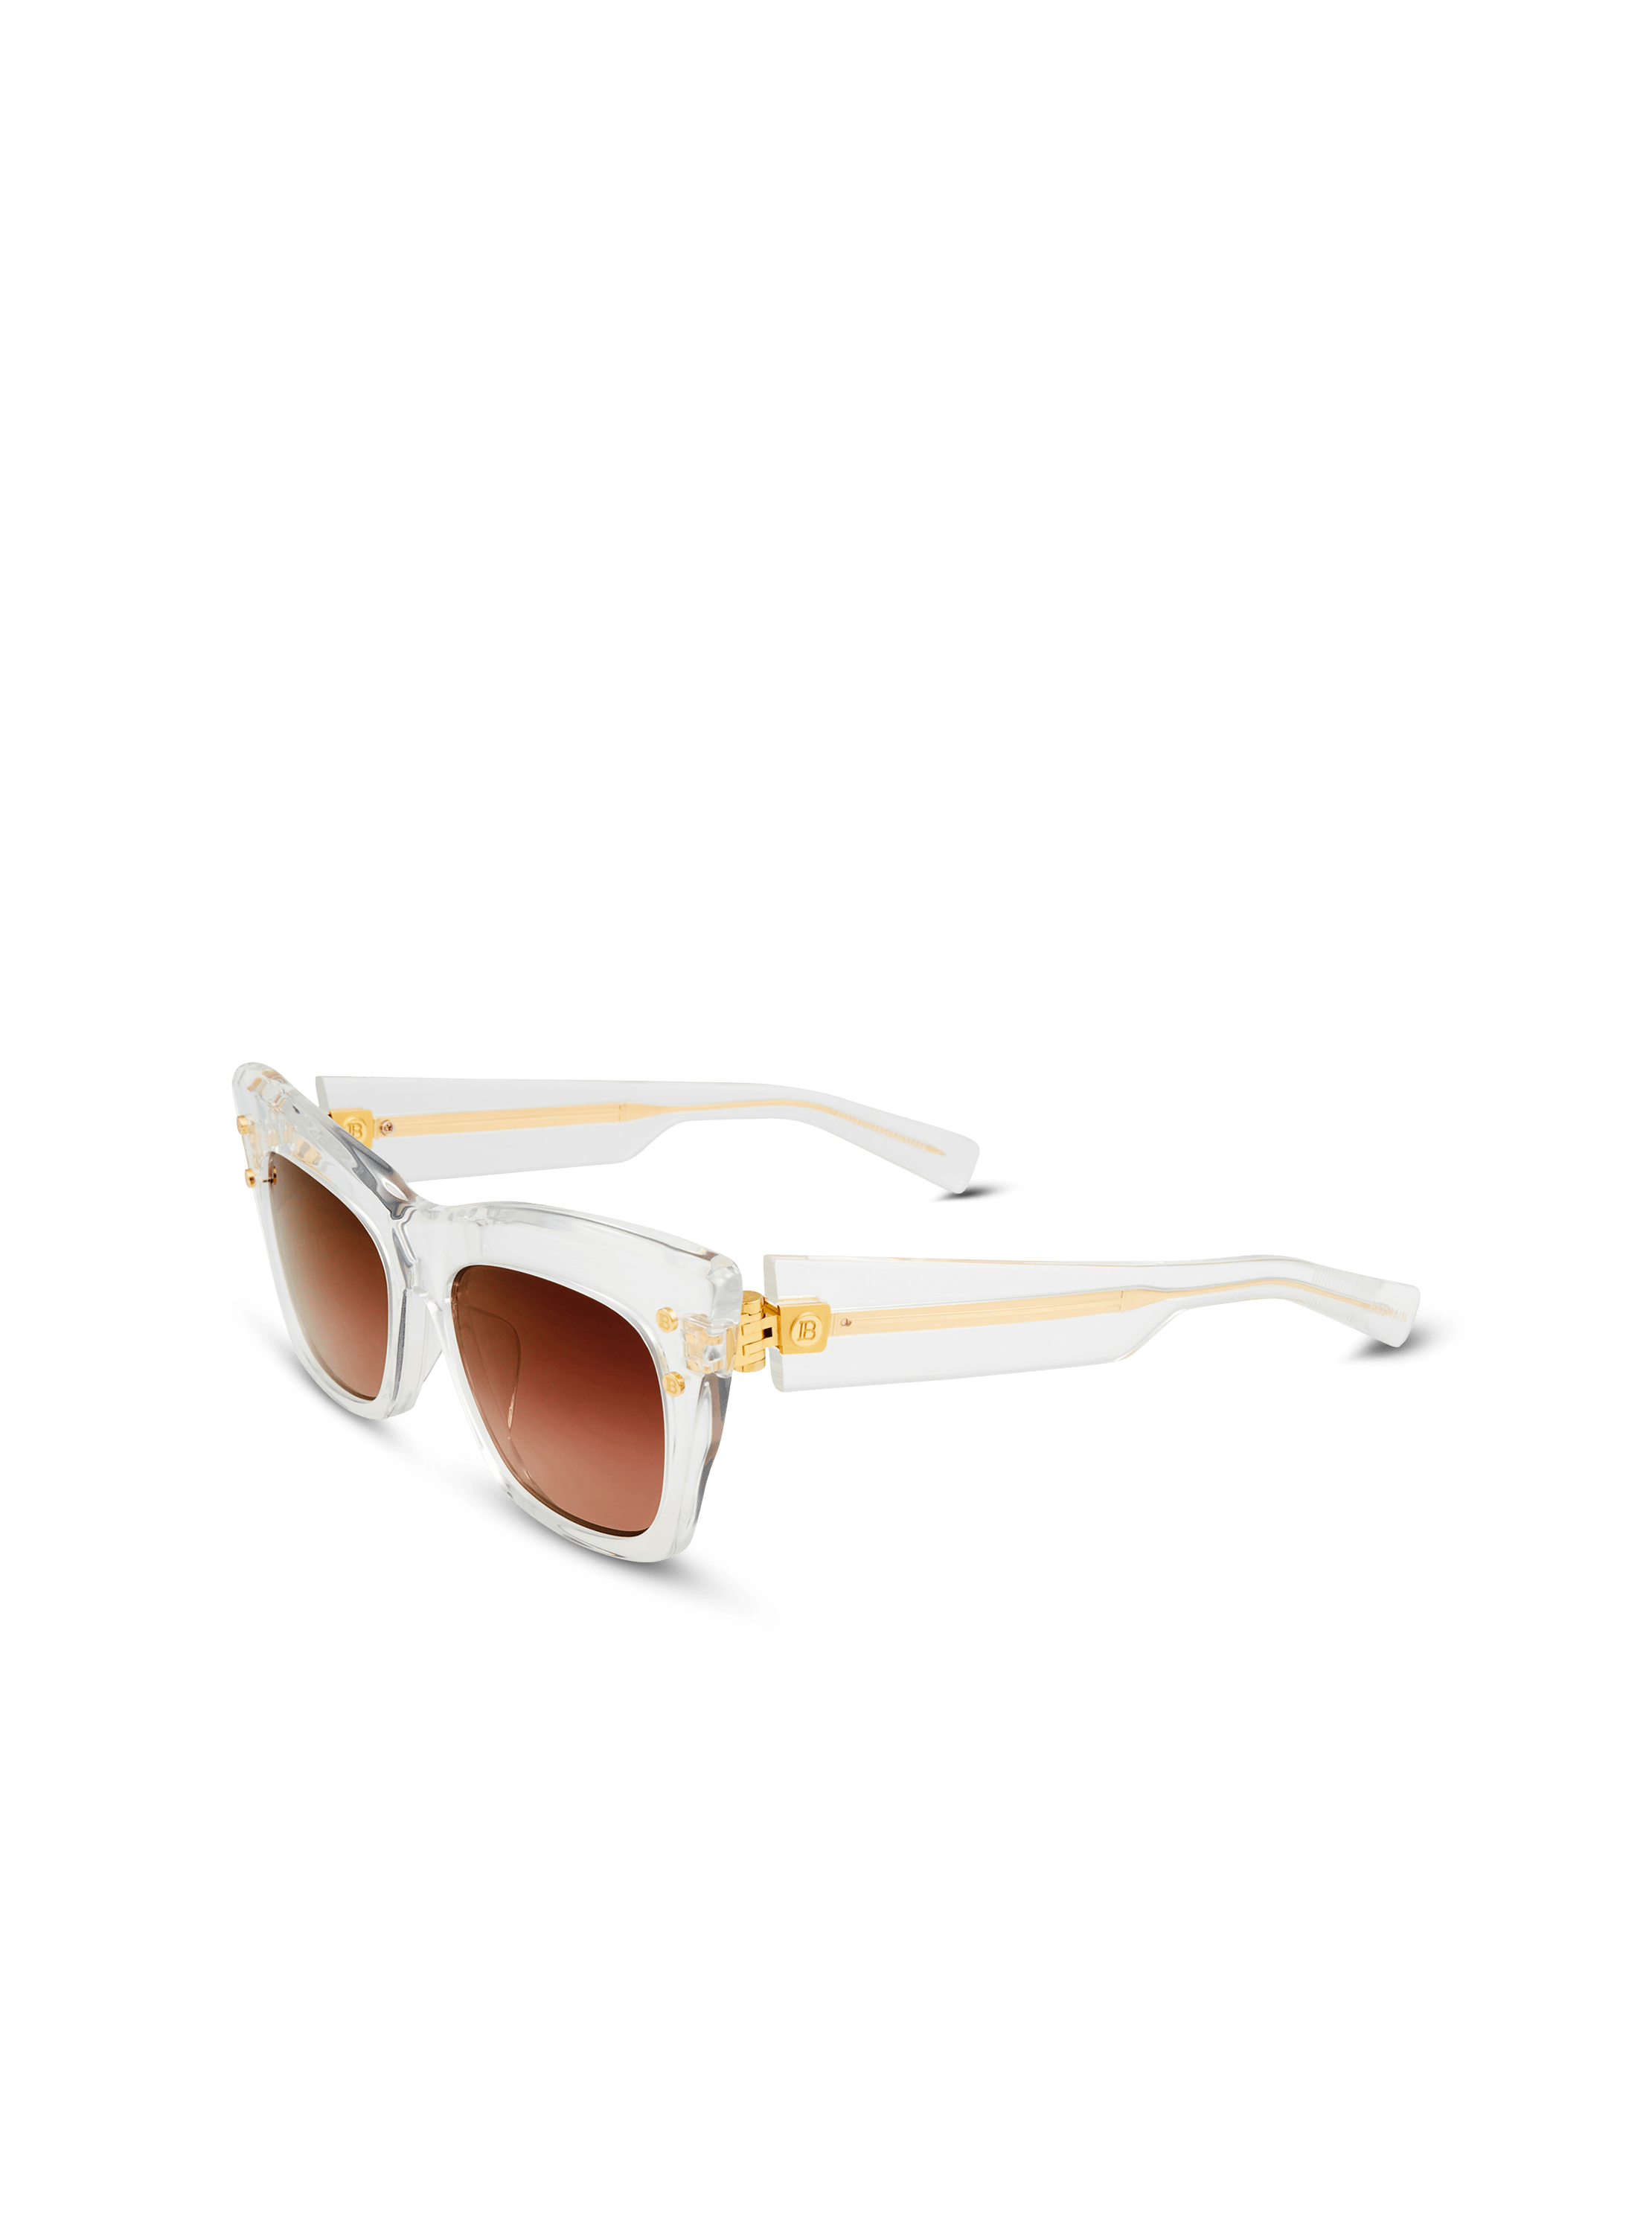 Crystal B-II sunglasses